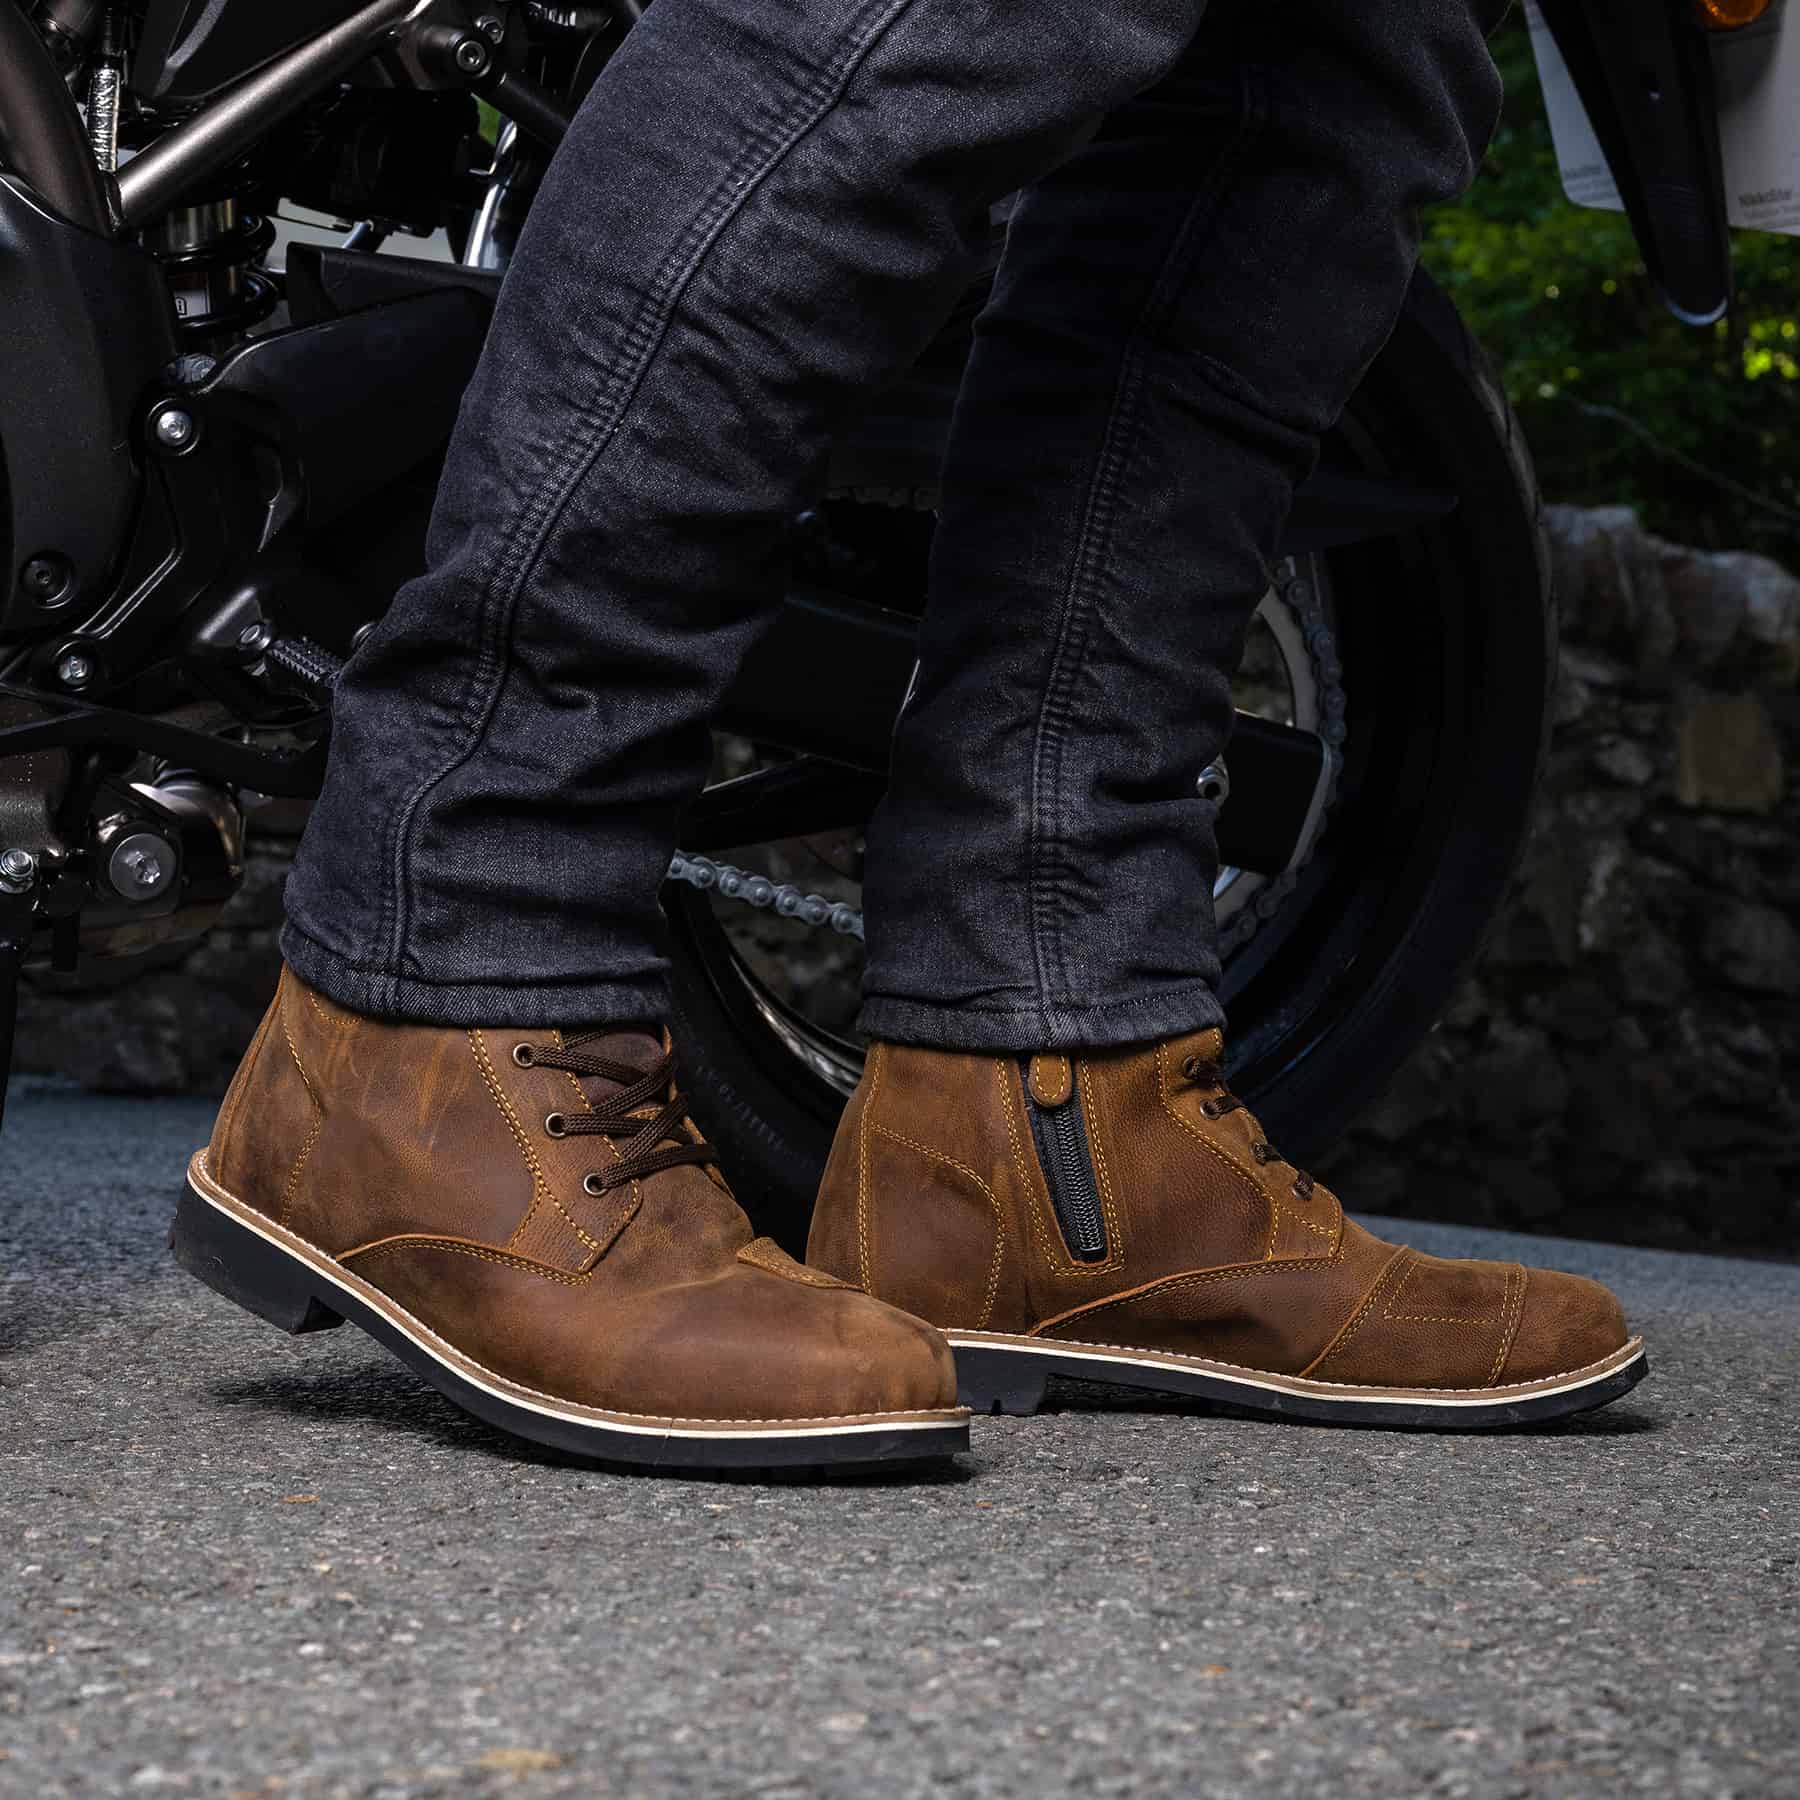 Merlin Ether waterproof heritage motorcycle boots in brown